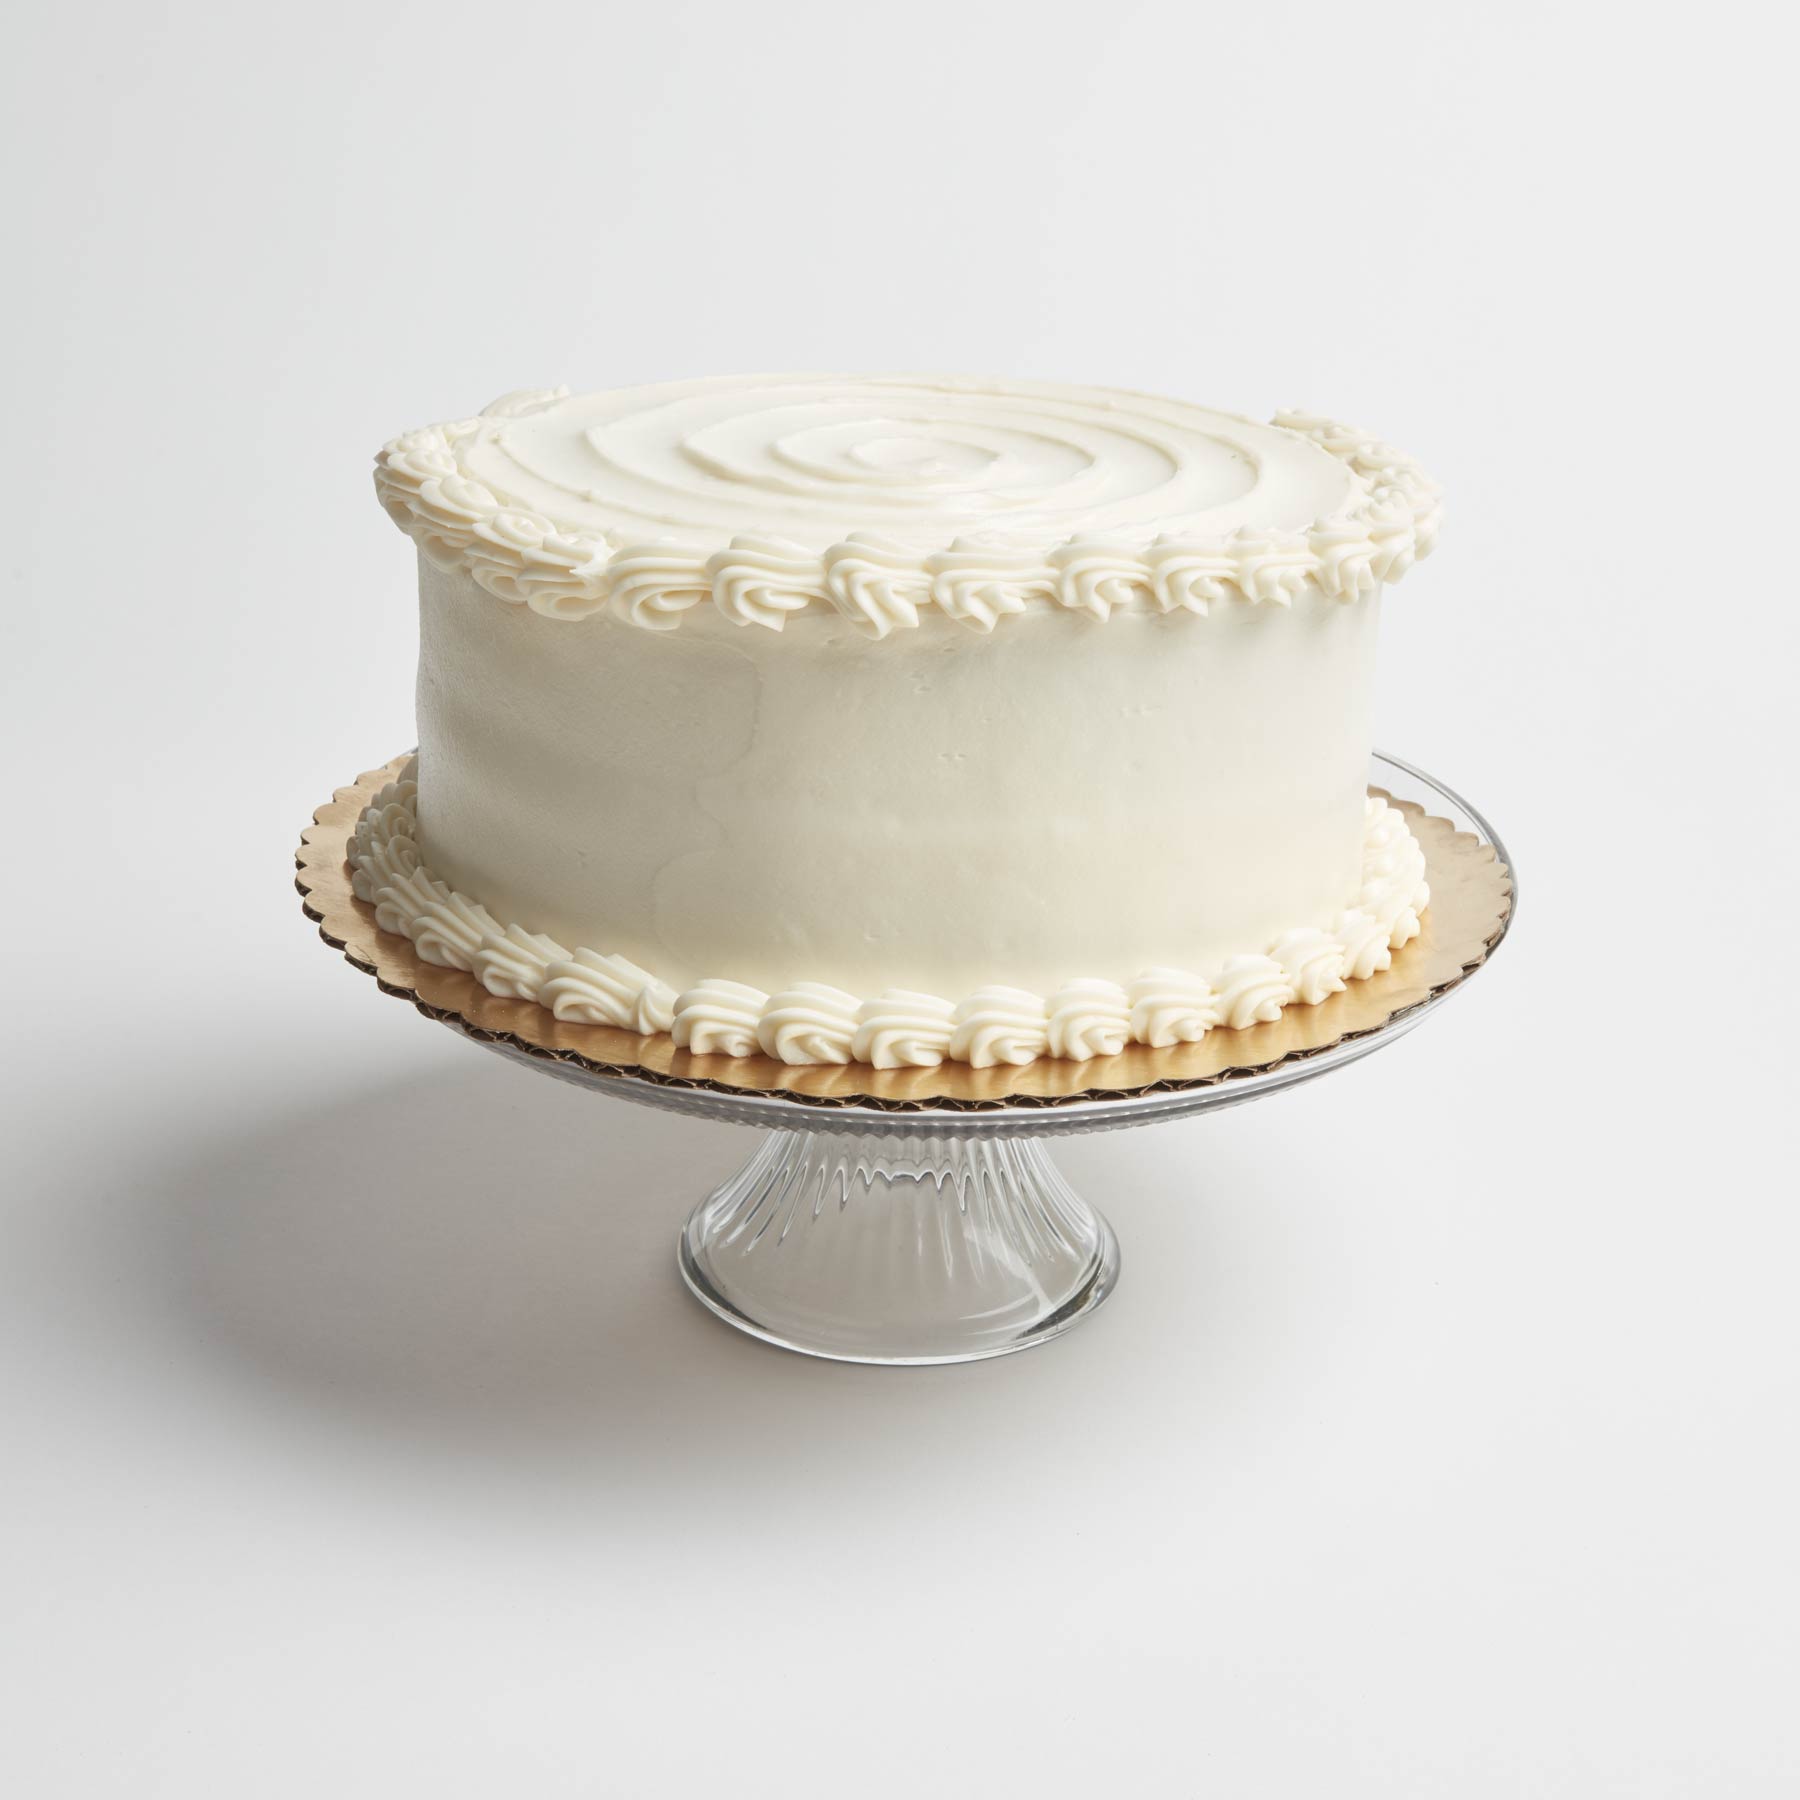 Round Torte Cake - Prantl's Bakery